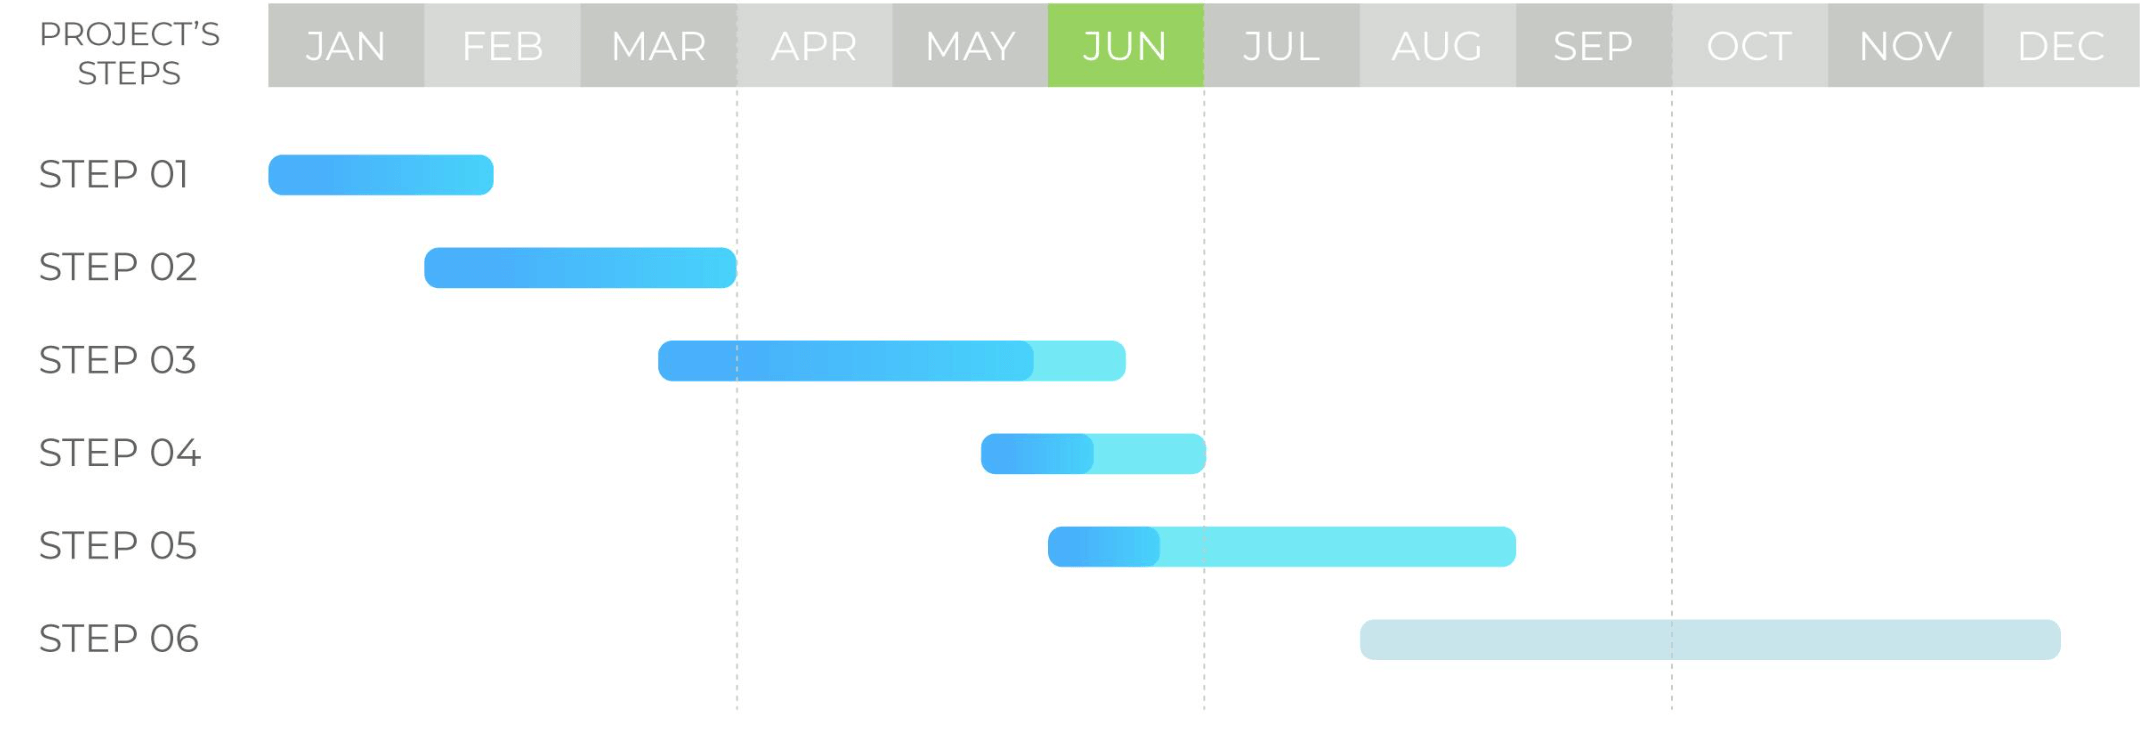 Gantt chart displays project progress